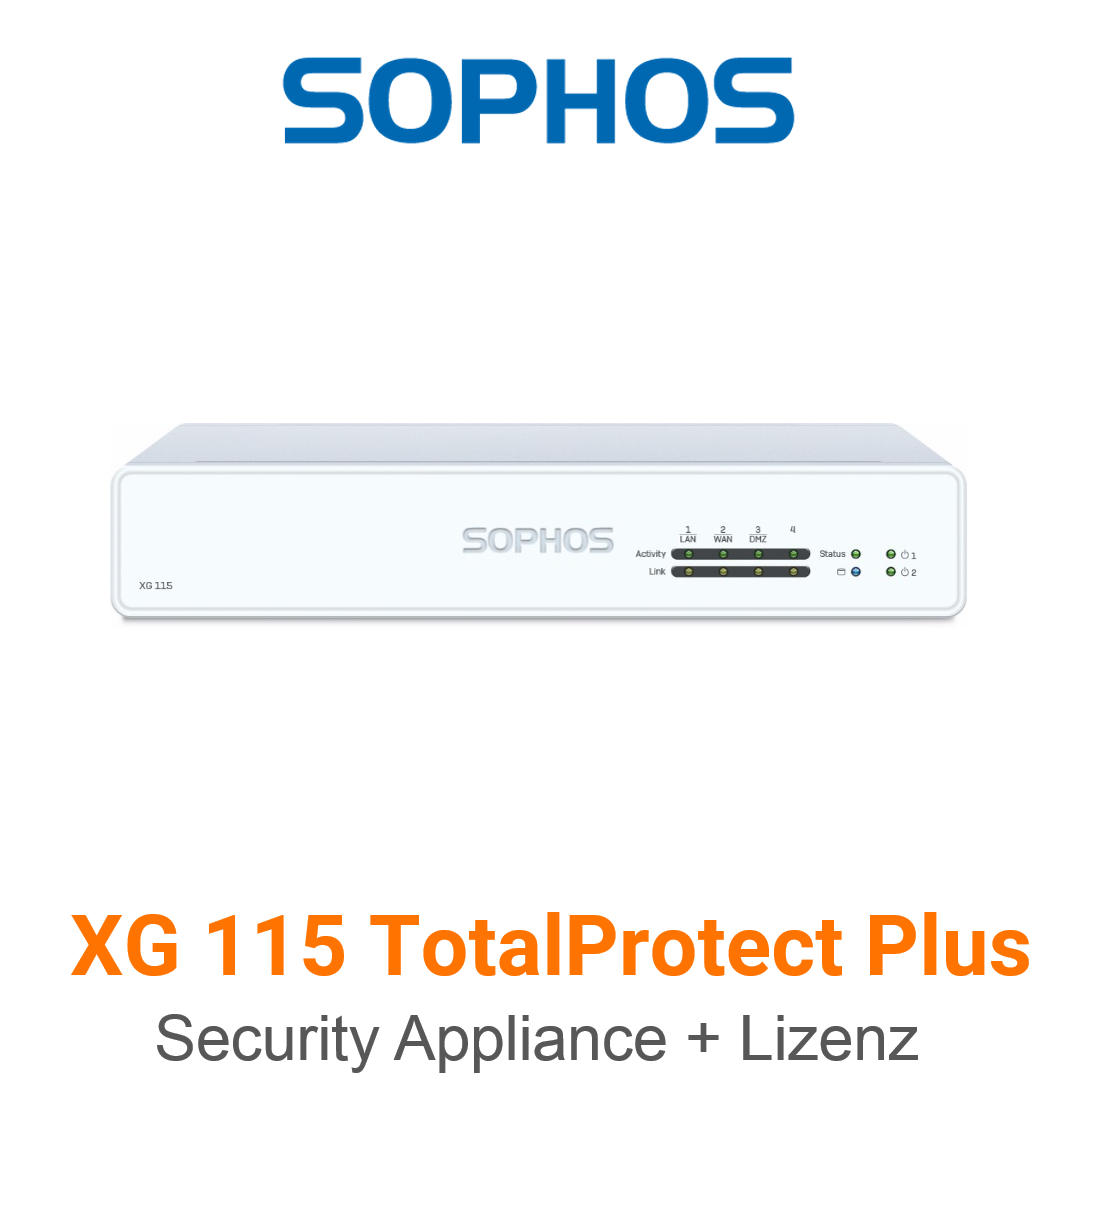 Sophos XG 115 TotalProtect Plus Bundle (Hardware + Lizenz) (End of Sale/Life)